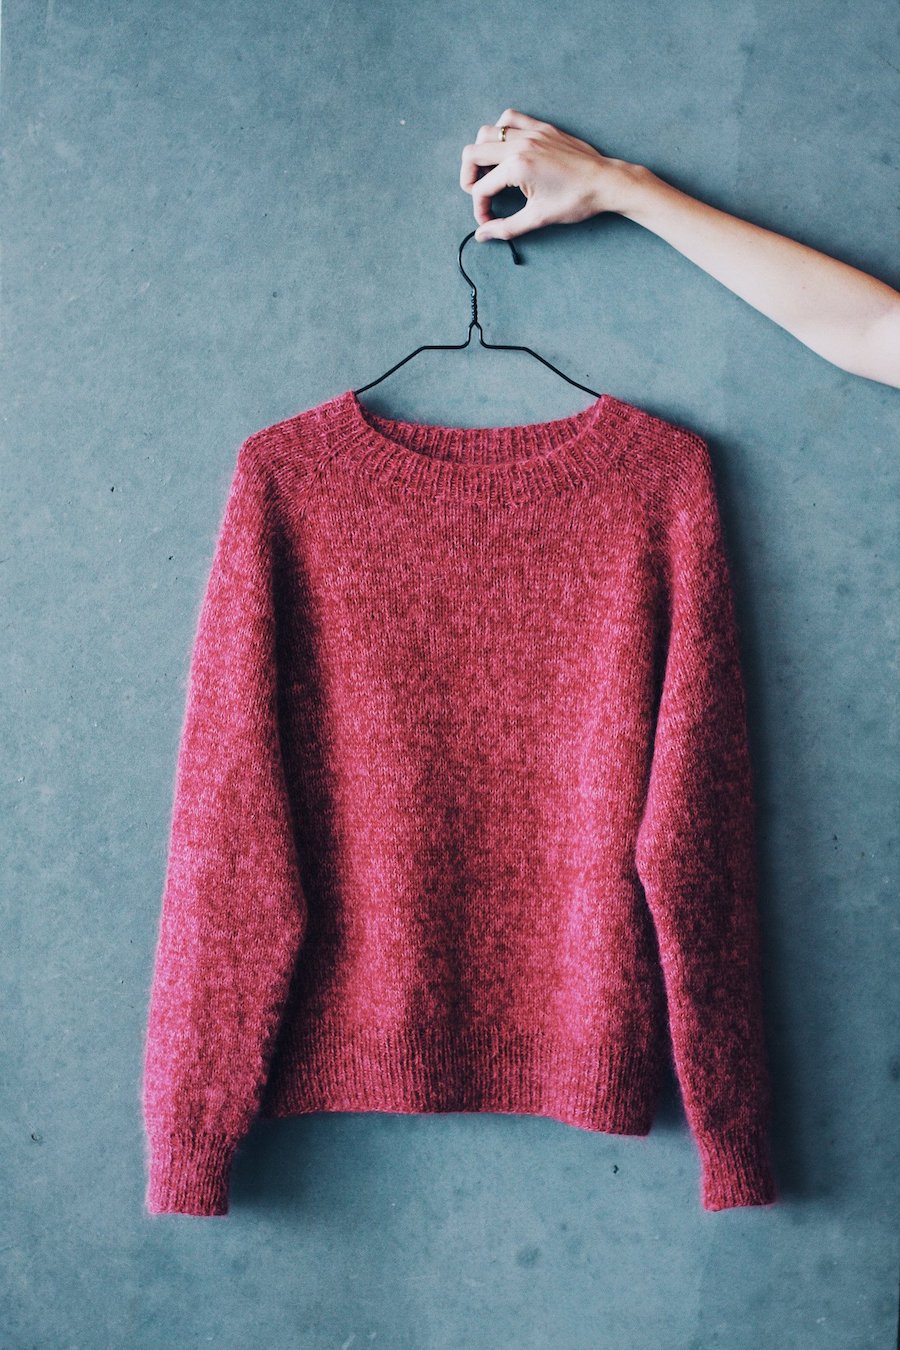 No Frills Sweater, Petite Knit. Knitting Pattern – Miss Maude